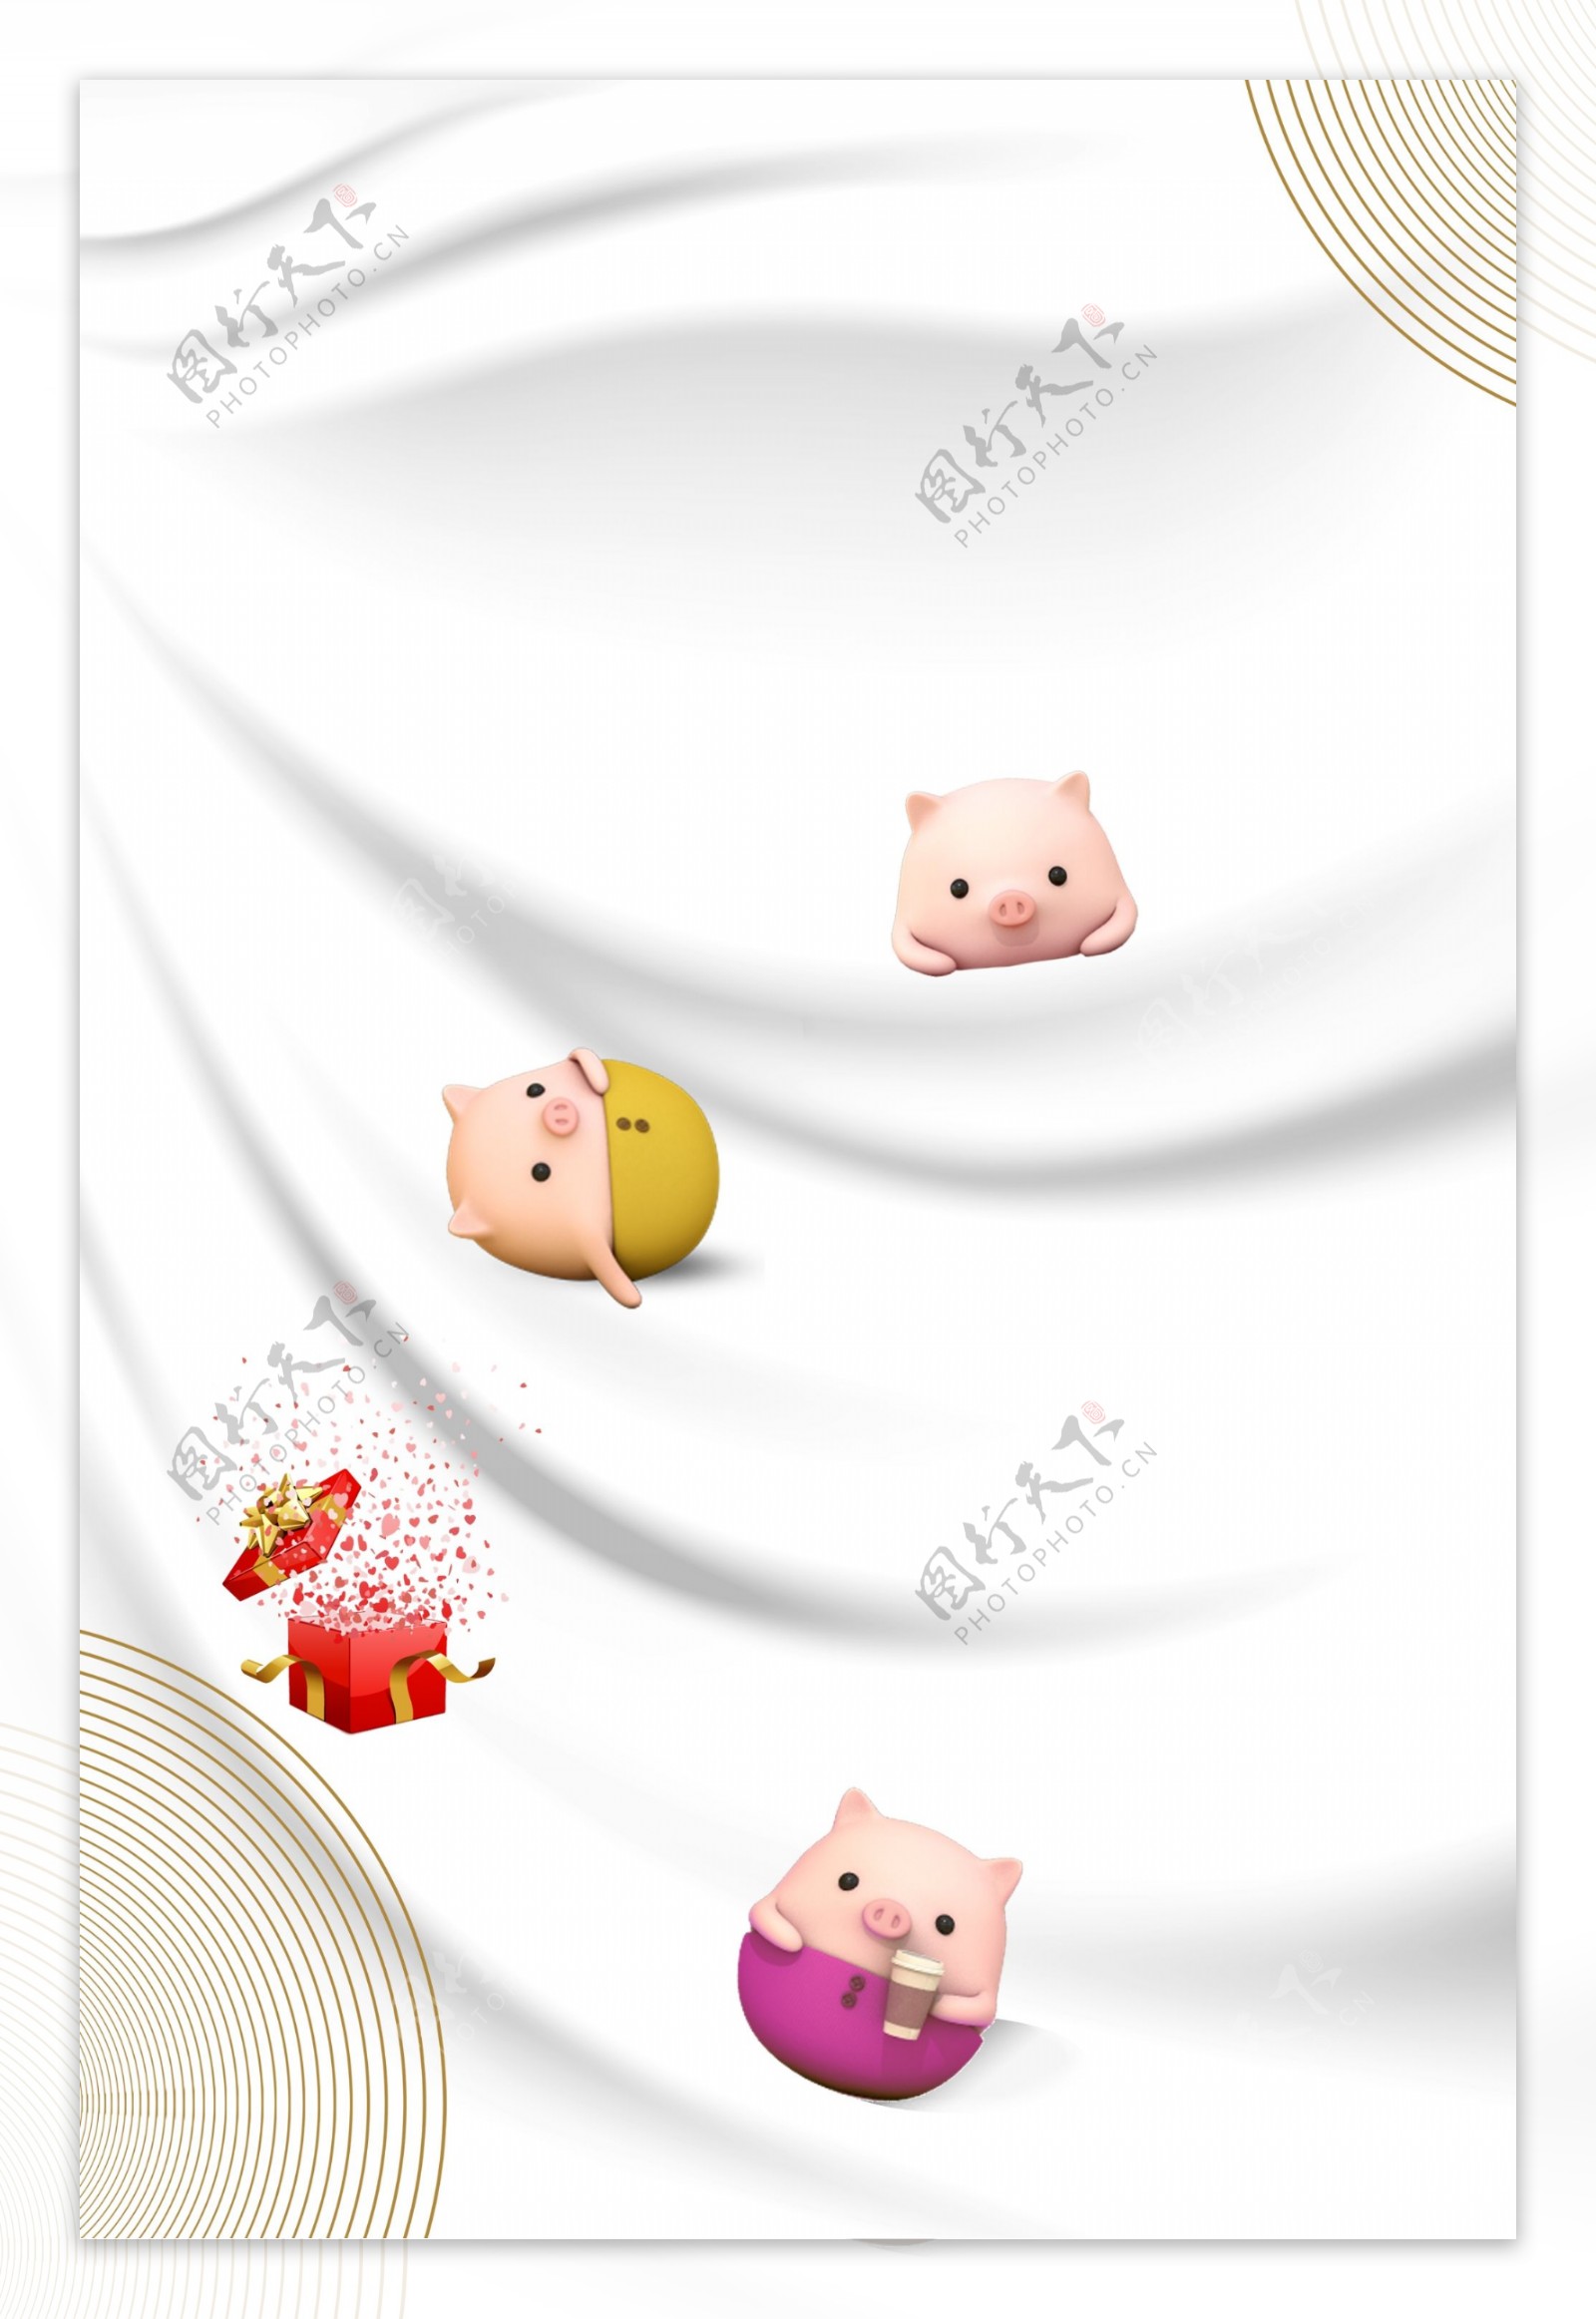 白色可爱小猪礼物新年背景设计素材